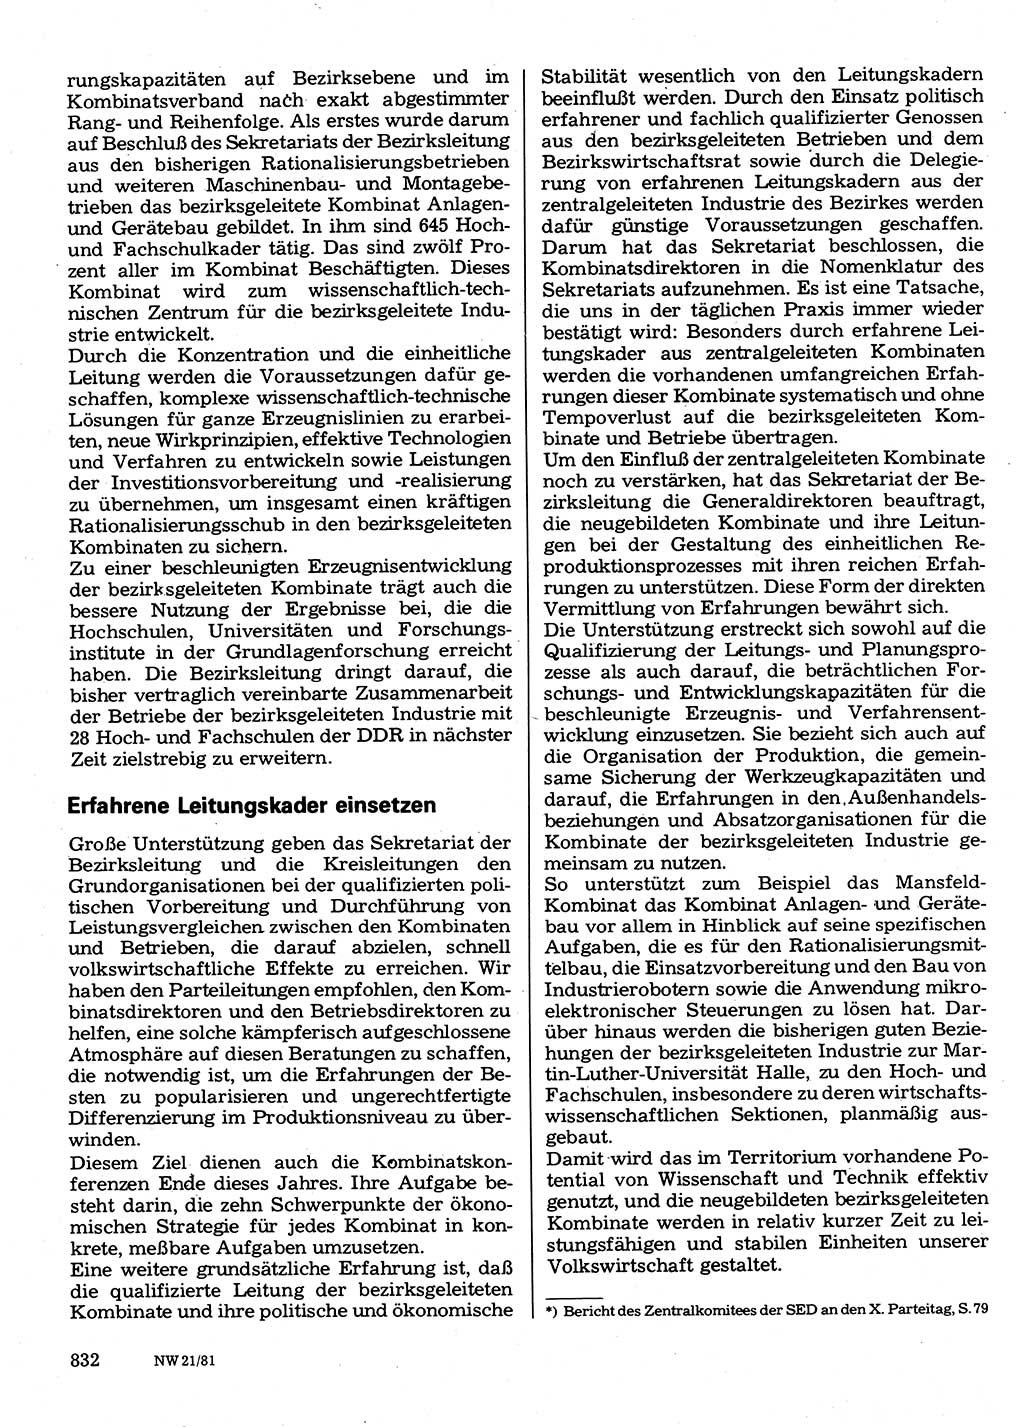 Neuer Weg (NW), Organ des Zentralkomitees (ZK) der SED (Sozialistische Einheitspartei Deutschlands) für Fragen des Parteilebens, 36. Jahrgang [Deutsche Demokratische Republik (DDR)] 1981, Seite 832 (NW ZK SED DDR 1981, S. 832)